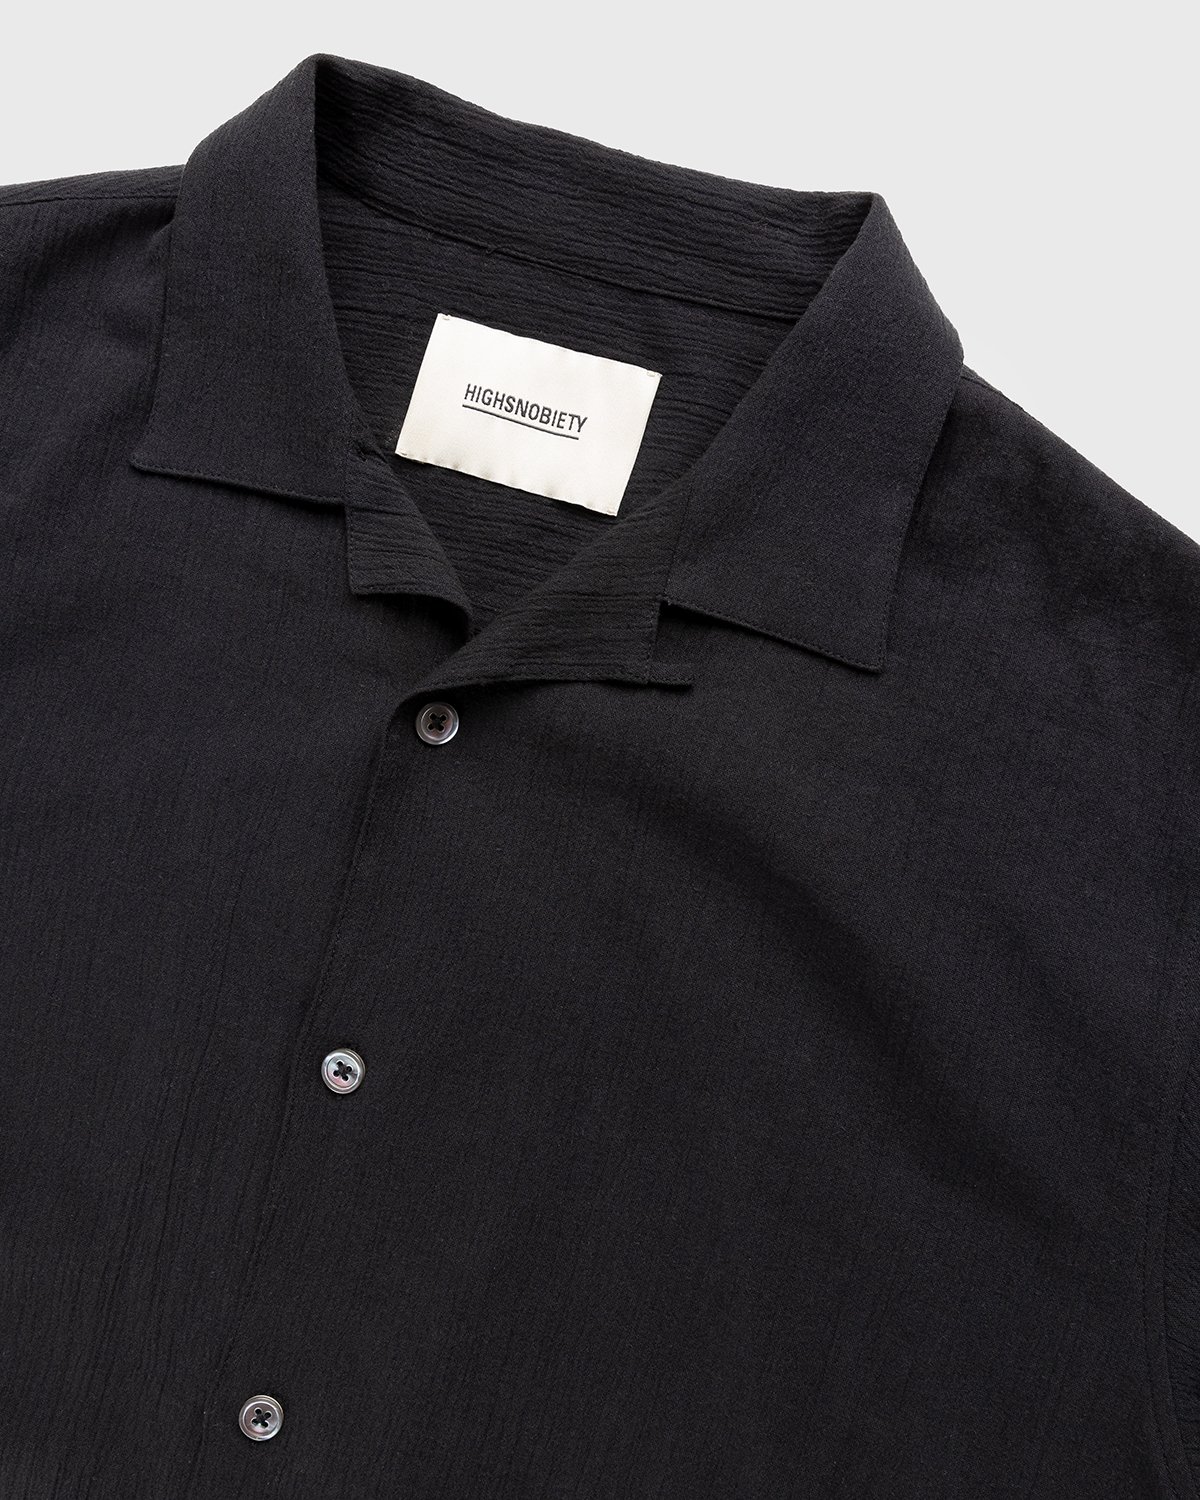 Highsnobiety - Crepe Short Sleeve Shirt Black - Clothing - Black - Image 4